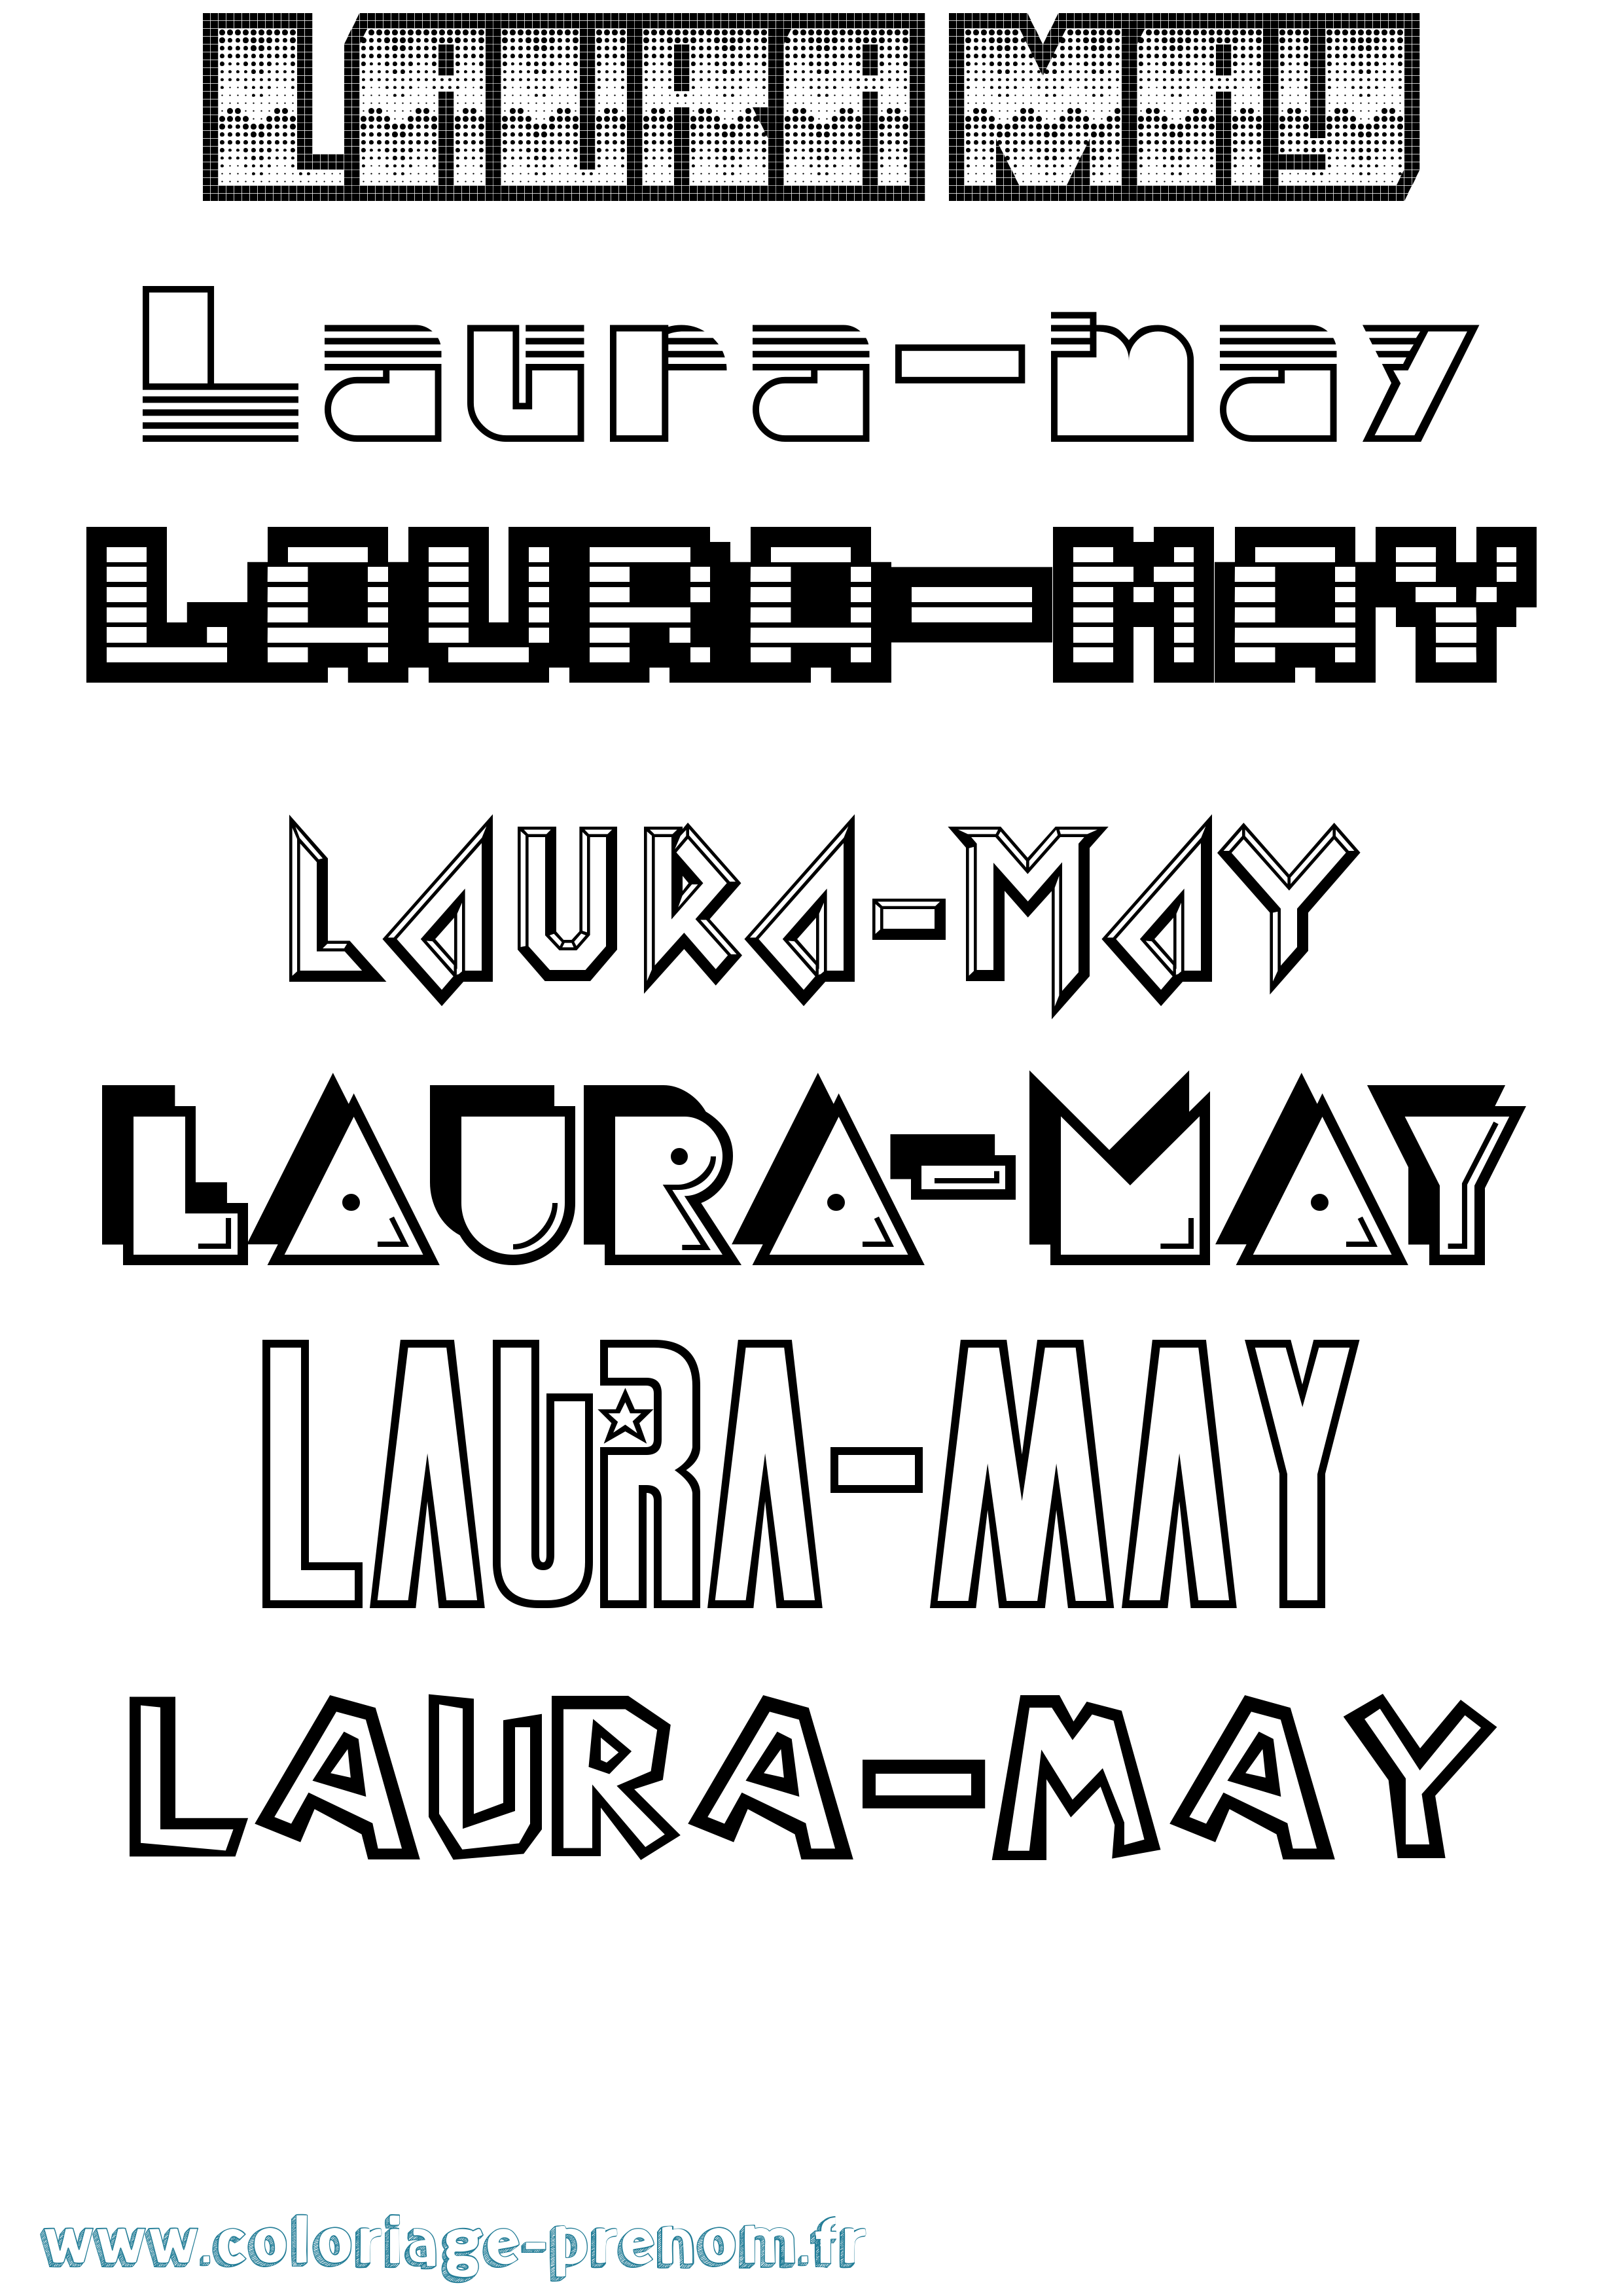 Coloriage prénom Laura-May Jeux Vidéos